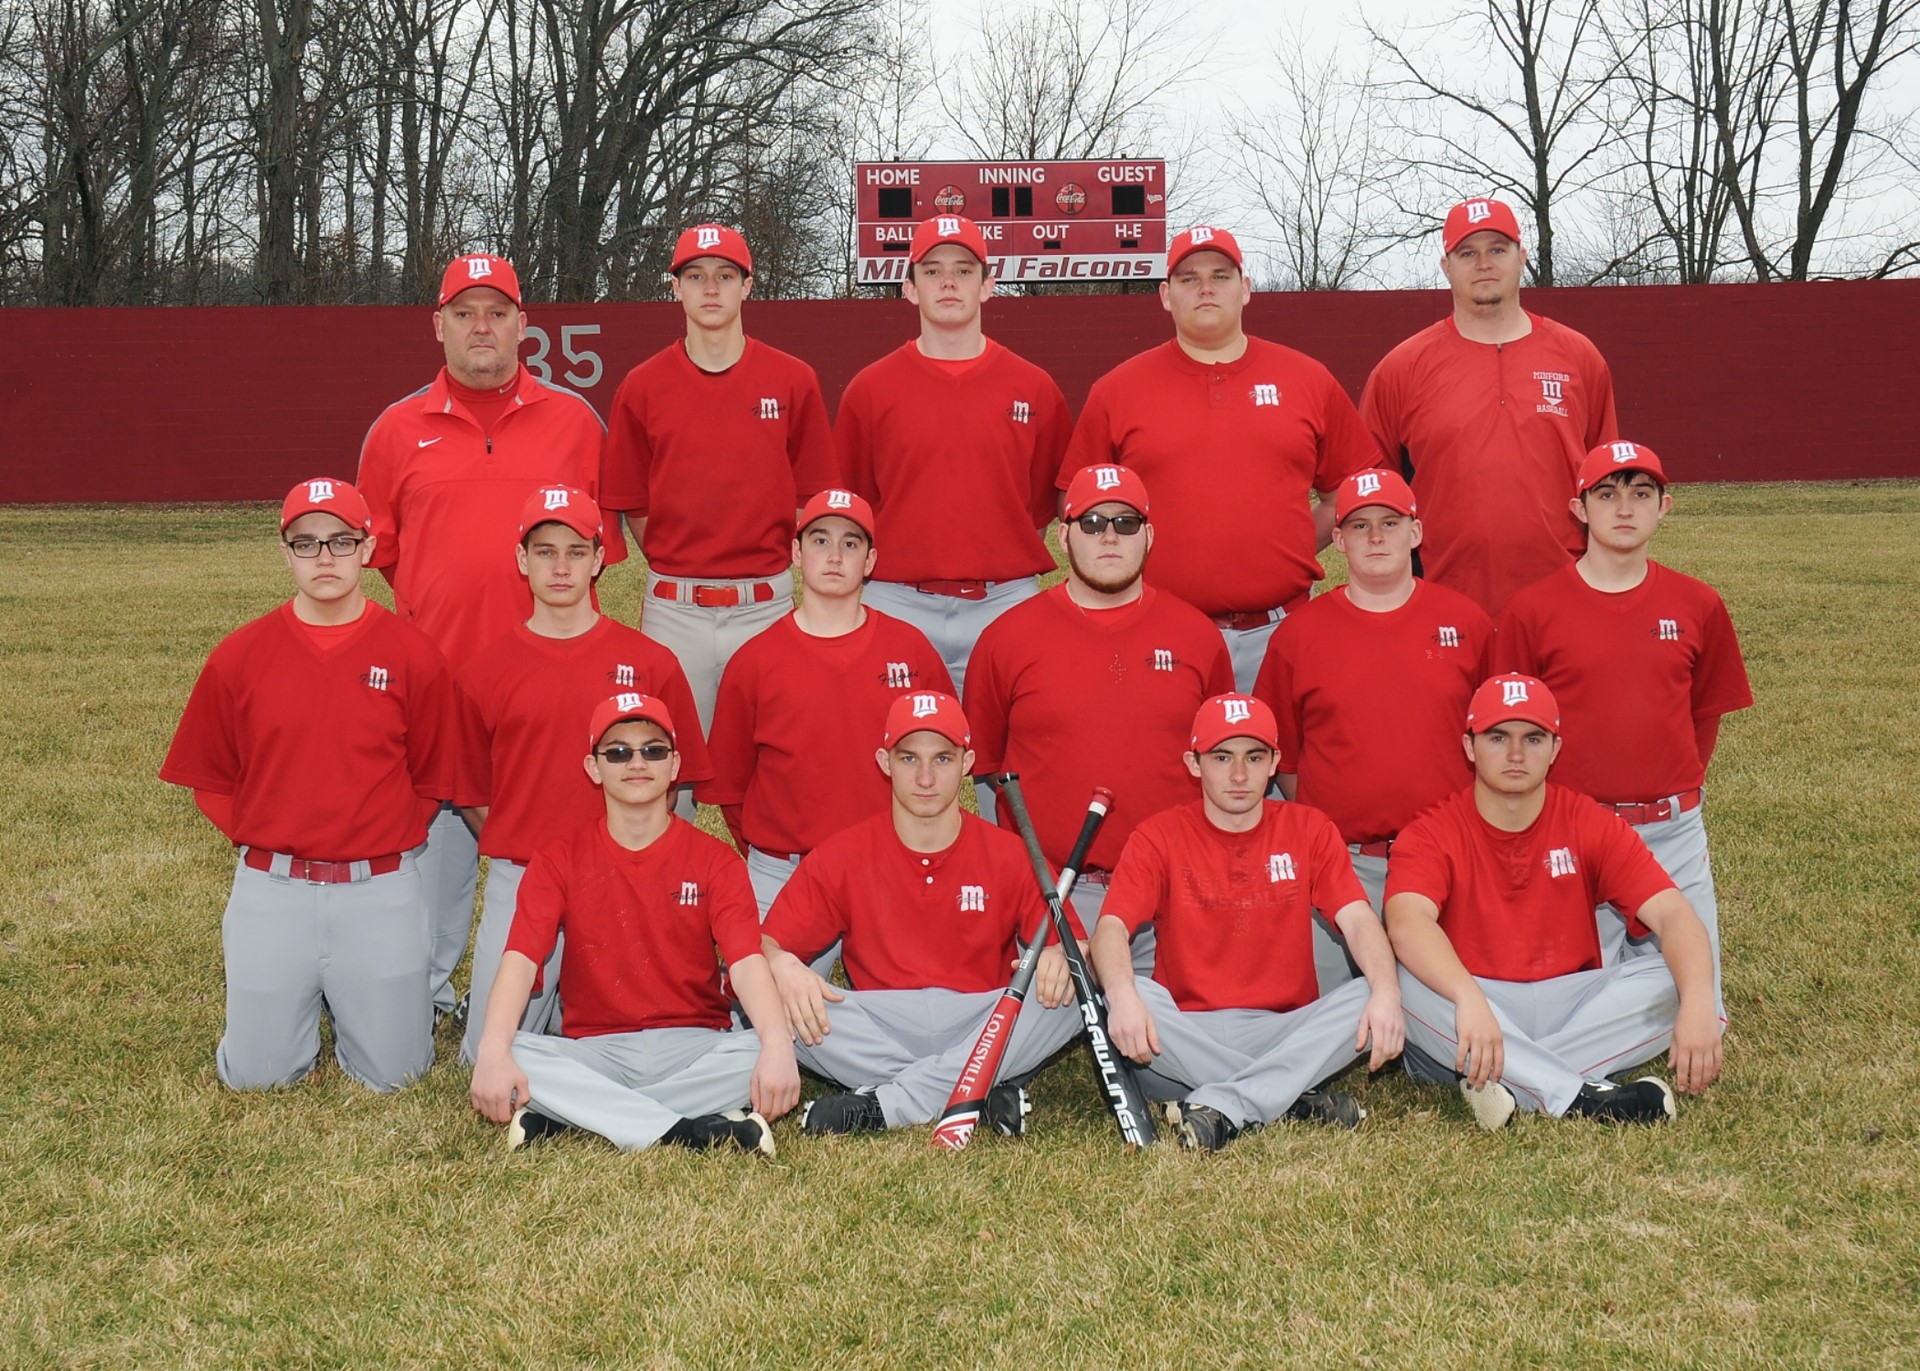 JV Baseball Team 2014 - 2015